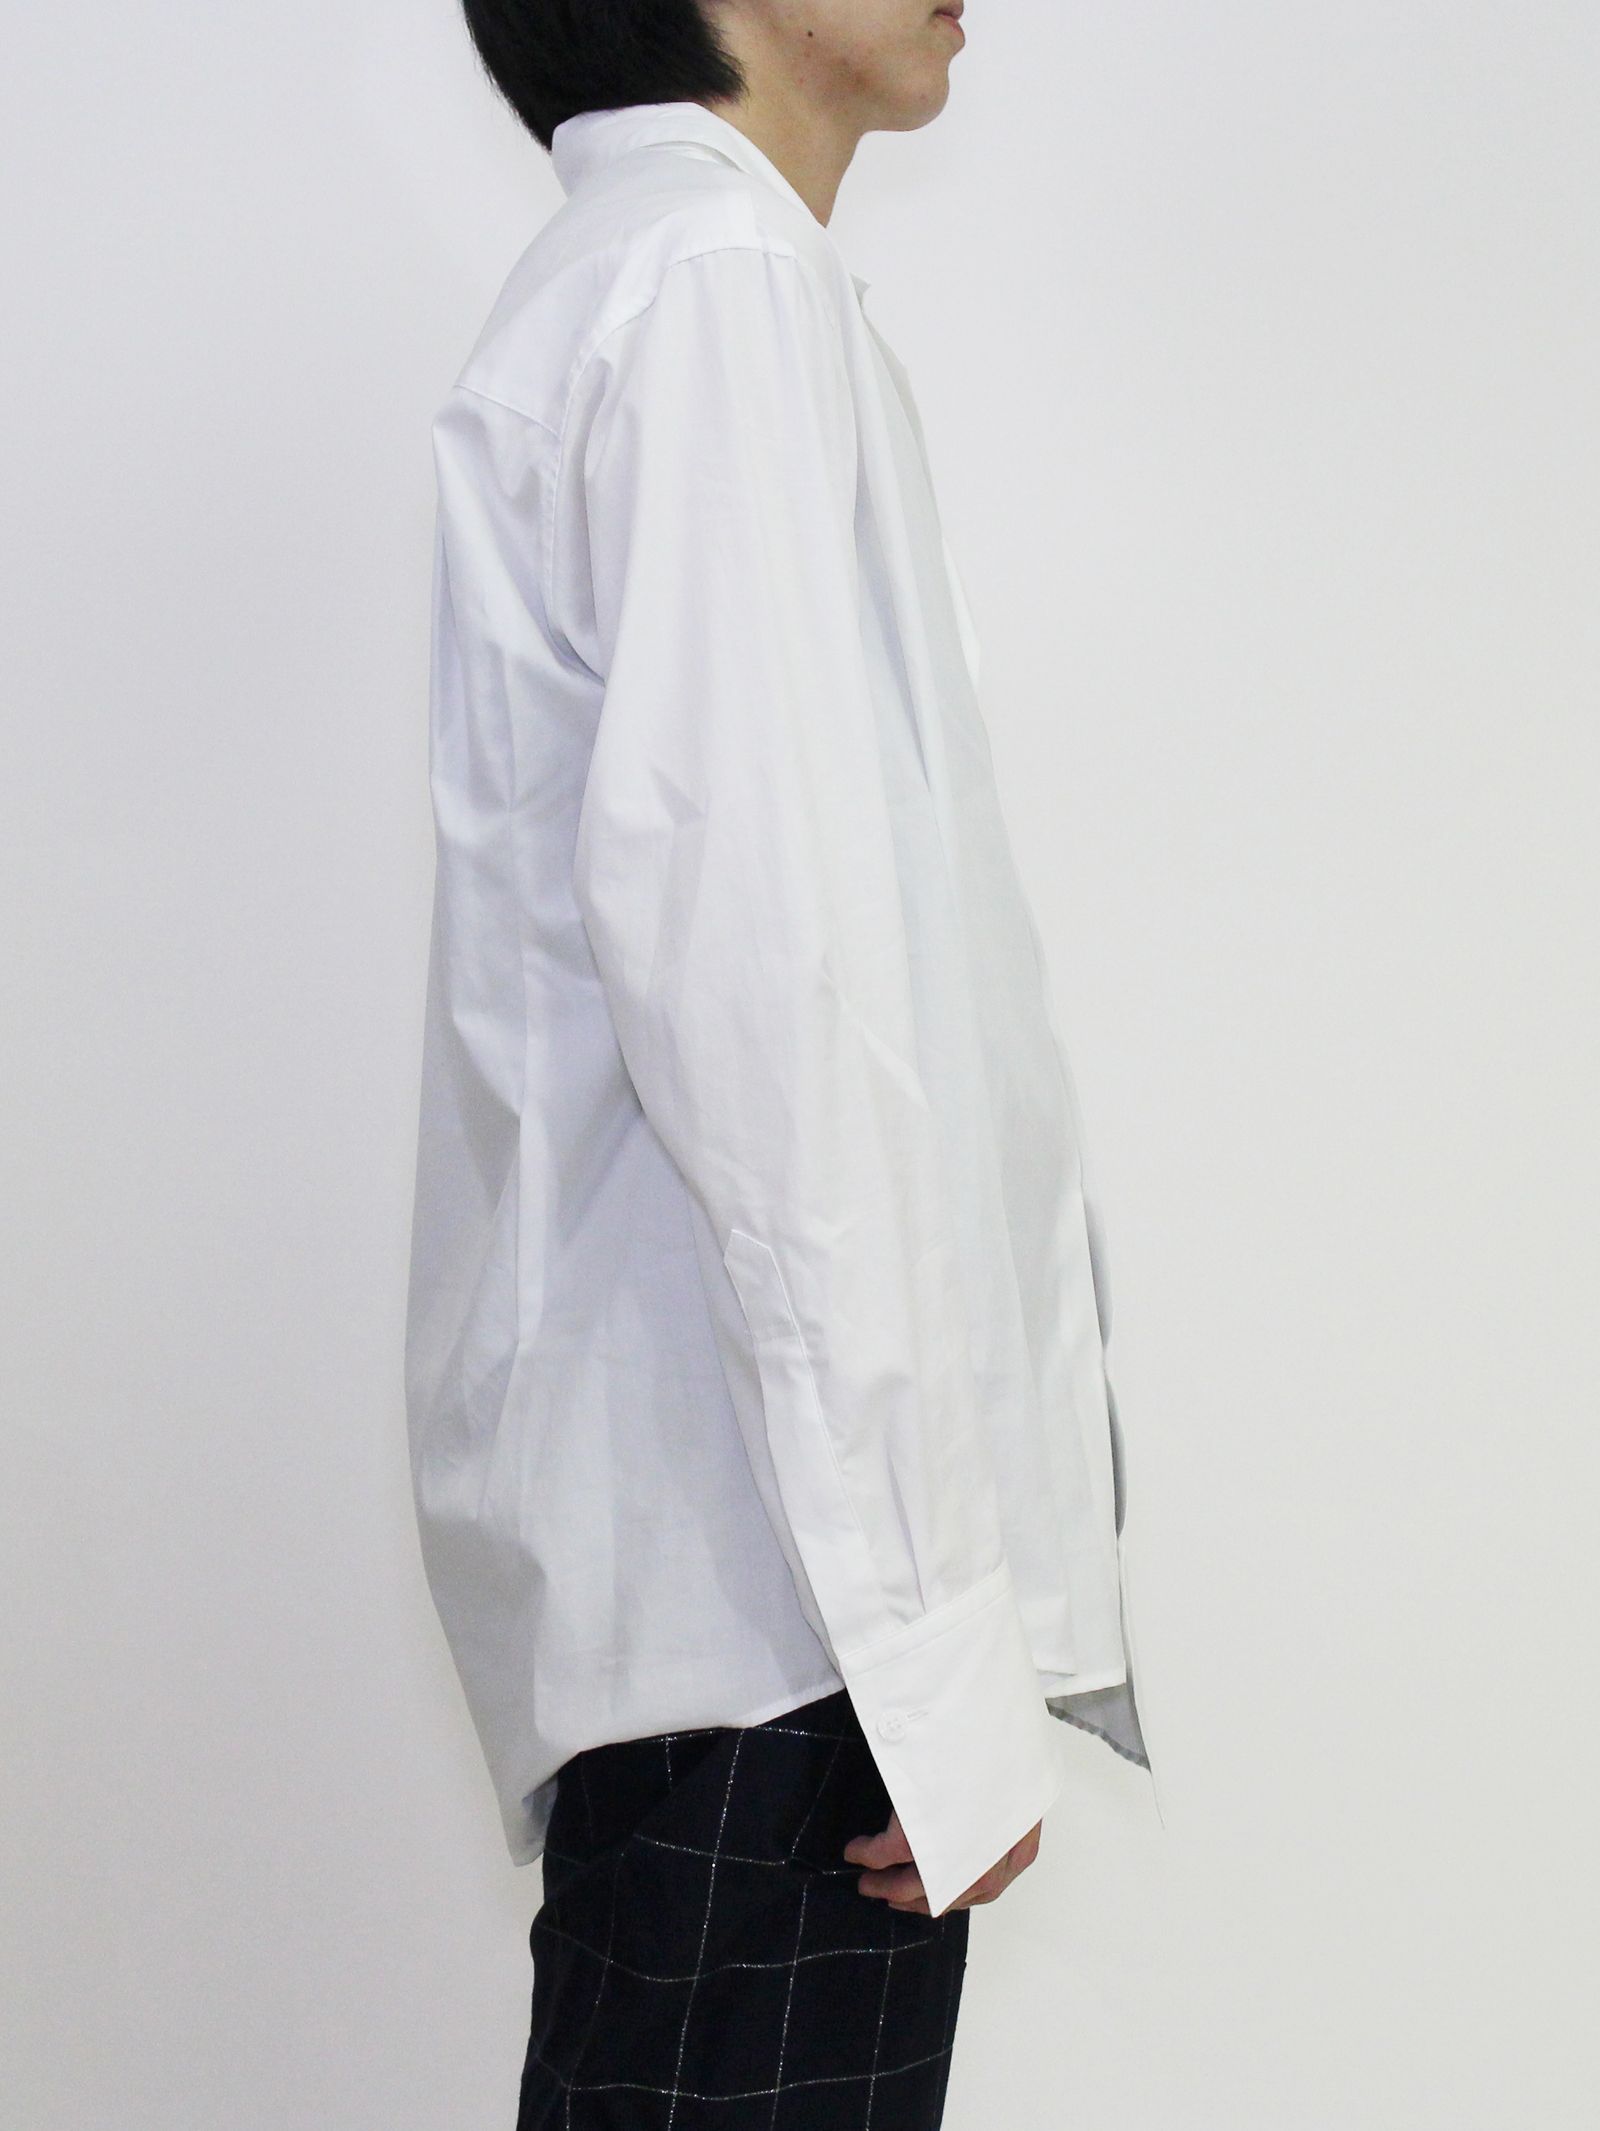 sulvam - オープンカラーシャツ / Broad open collar shirt / ホワイト